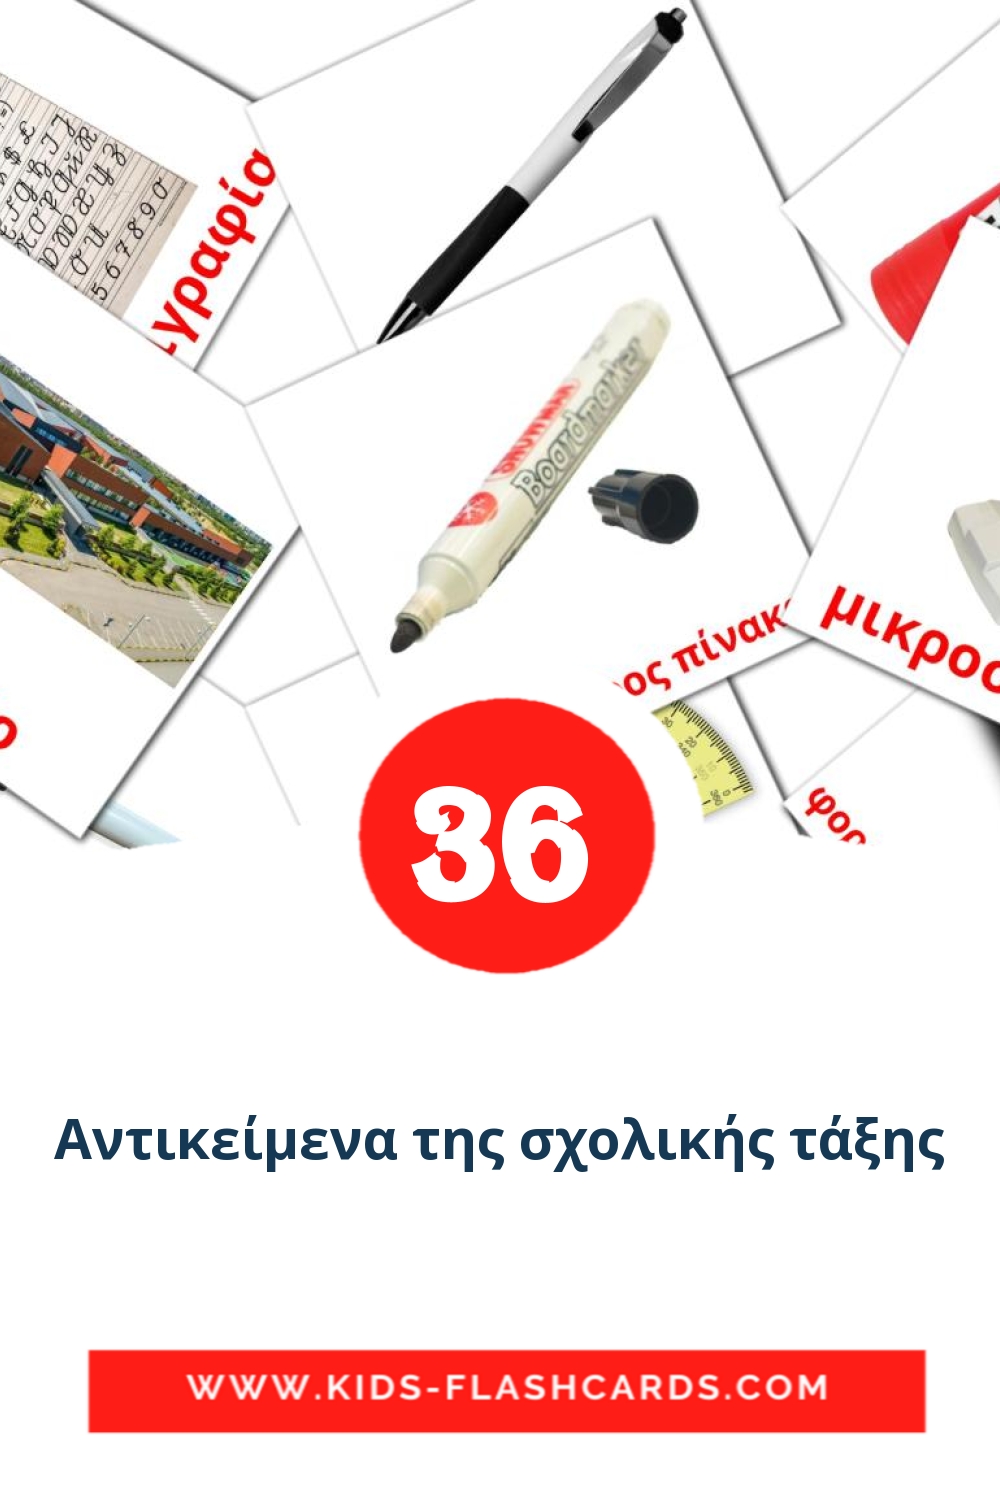 36 Αντικείμενα της σχολικής τάξης Bildkarten für den Kindergarten auf Griechisch